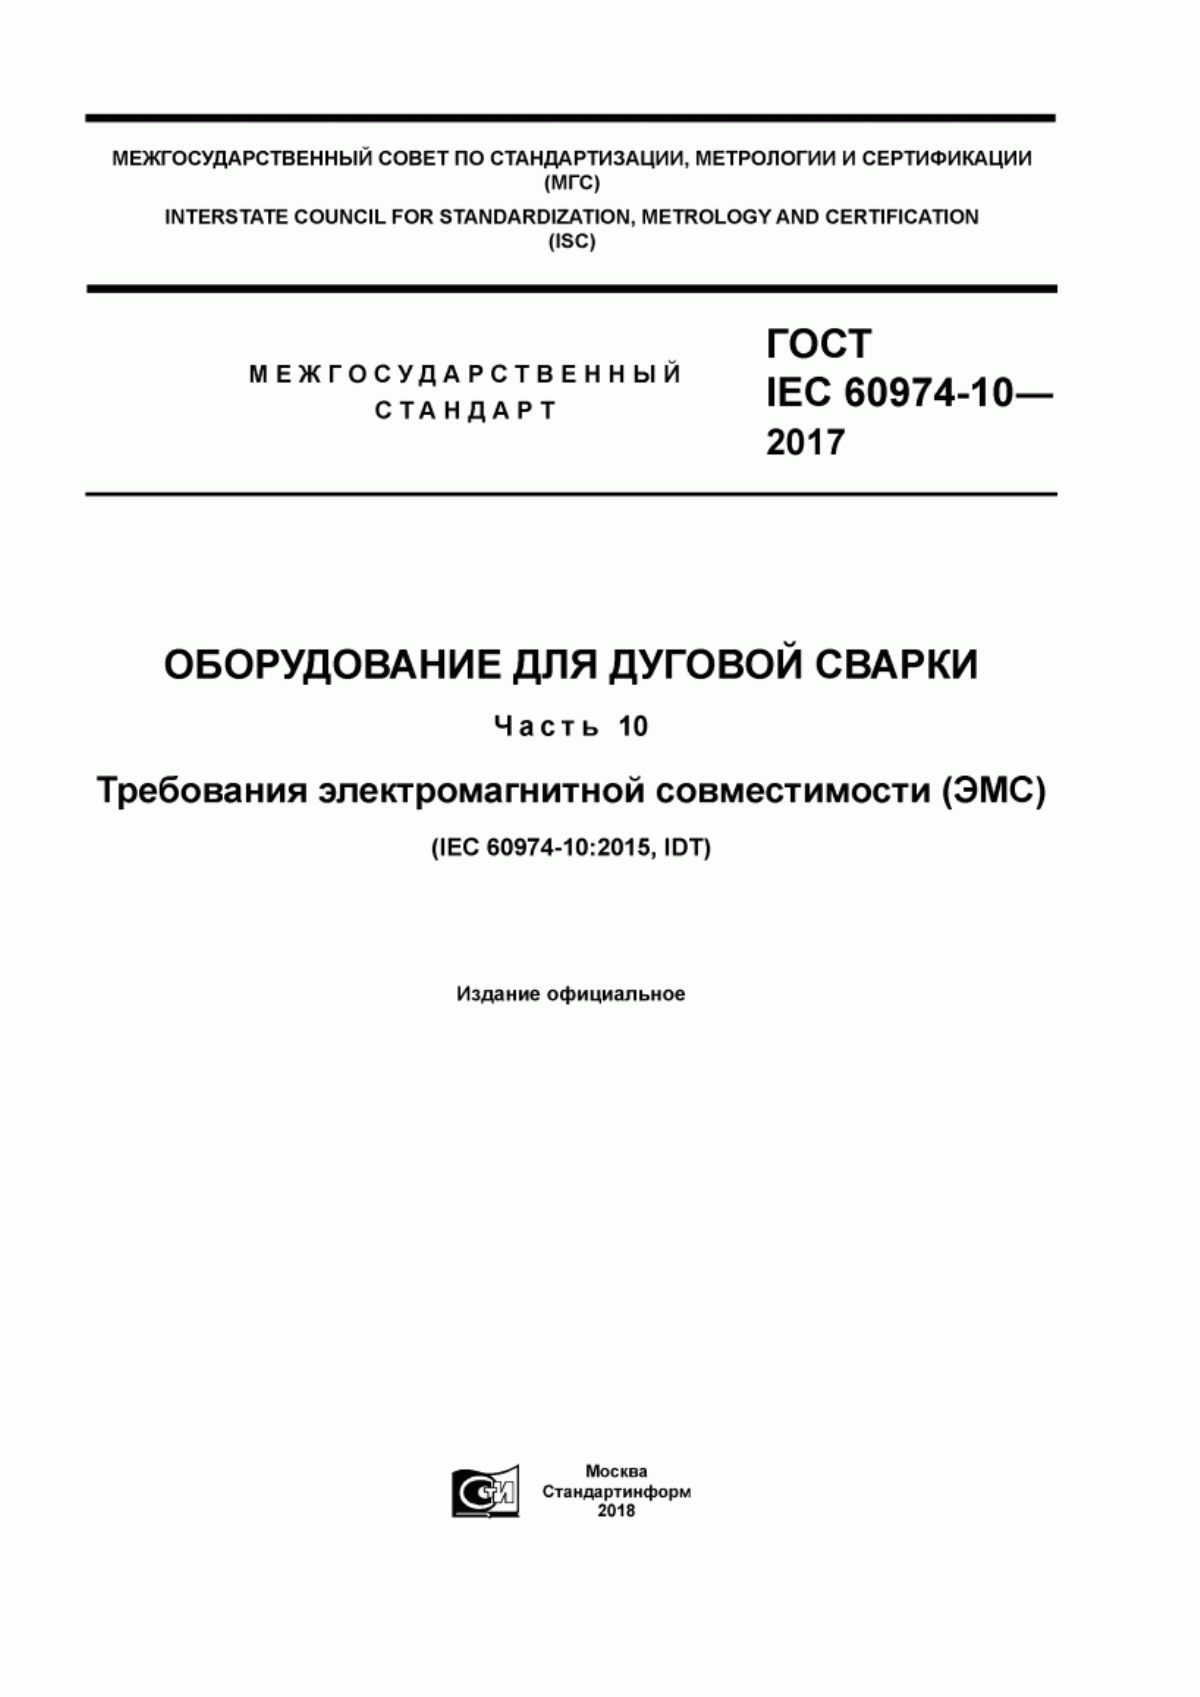 ГОСТ IEC 60974-10-2017 Оборудование для дуговой сварки. Часть 10. Требования электромагнитной совместимости (ЭМС)